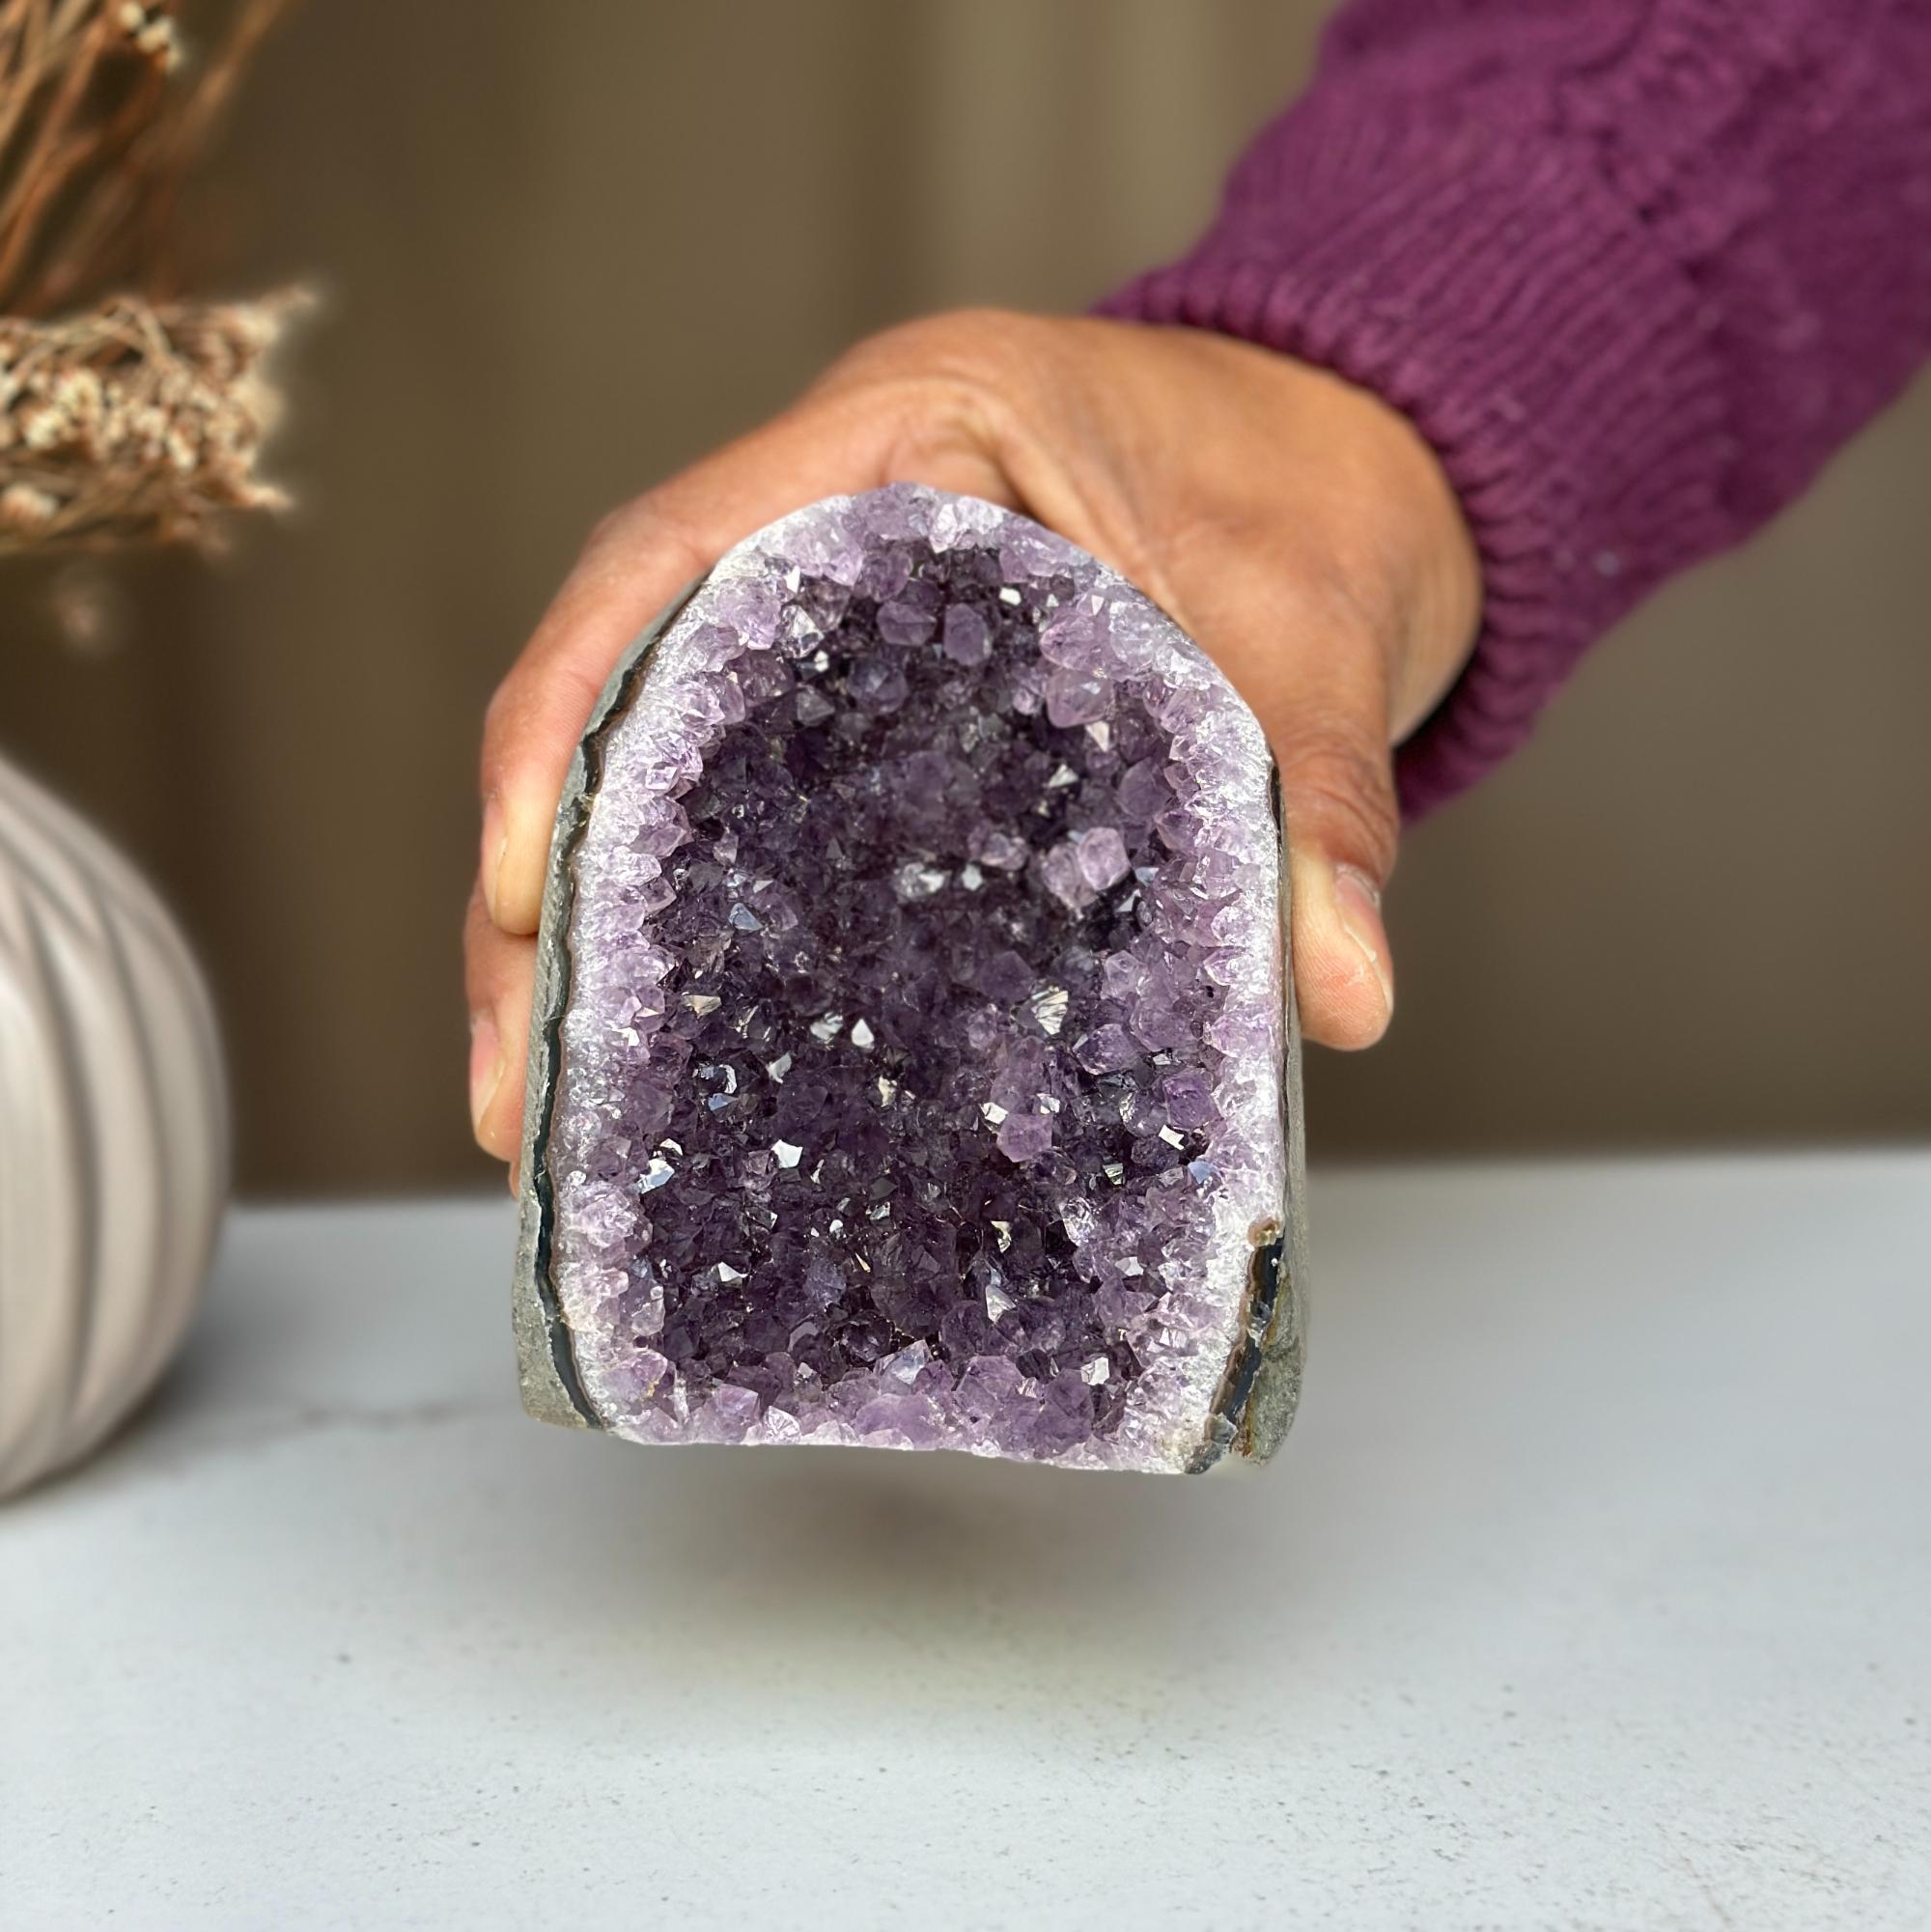 1 Lb. Purple Amethyst Geode